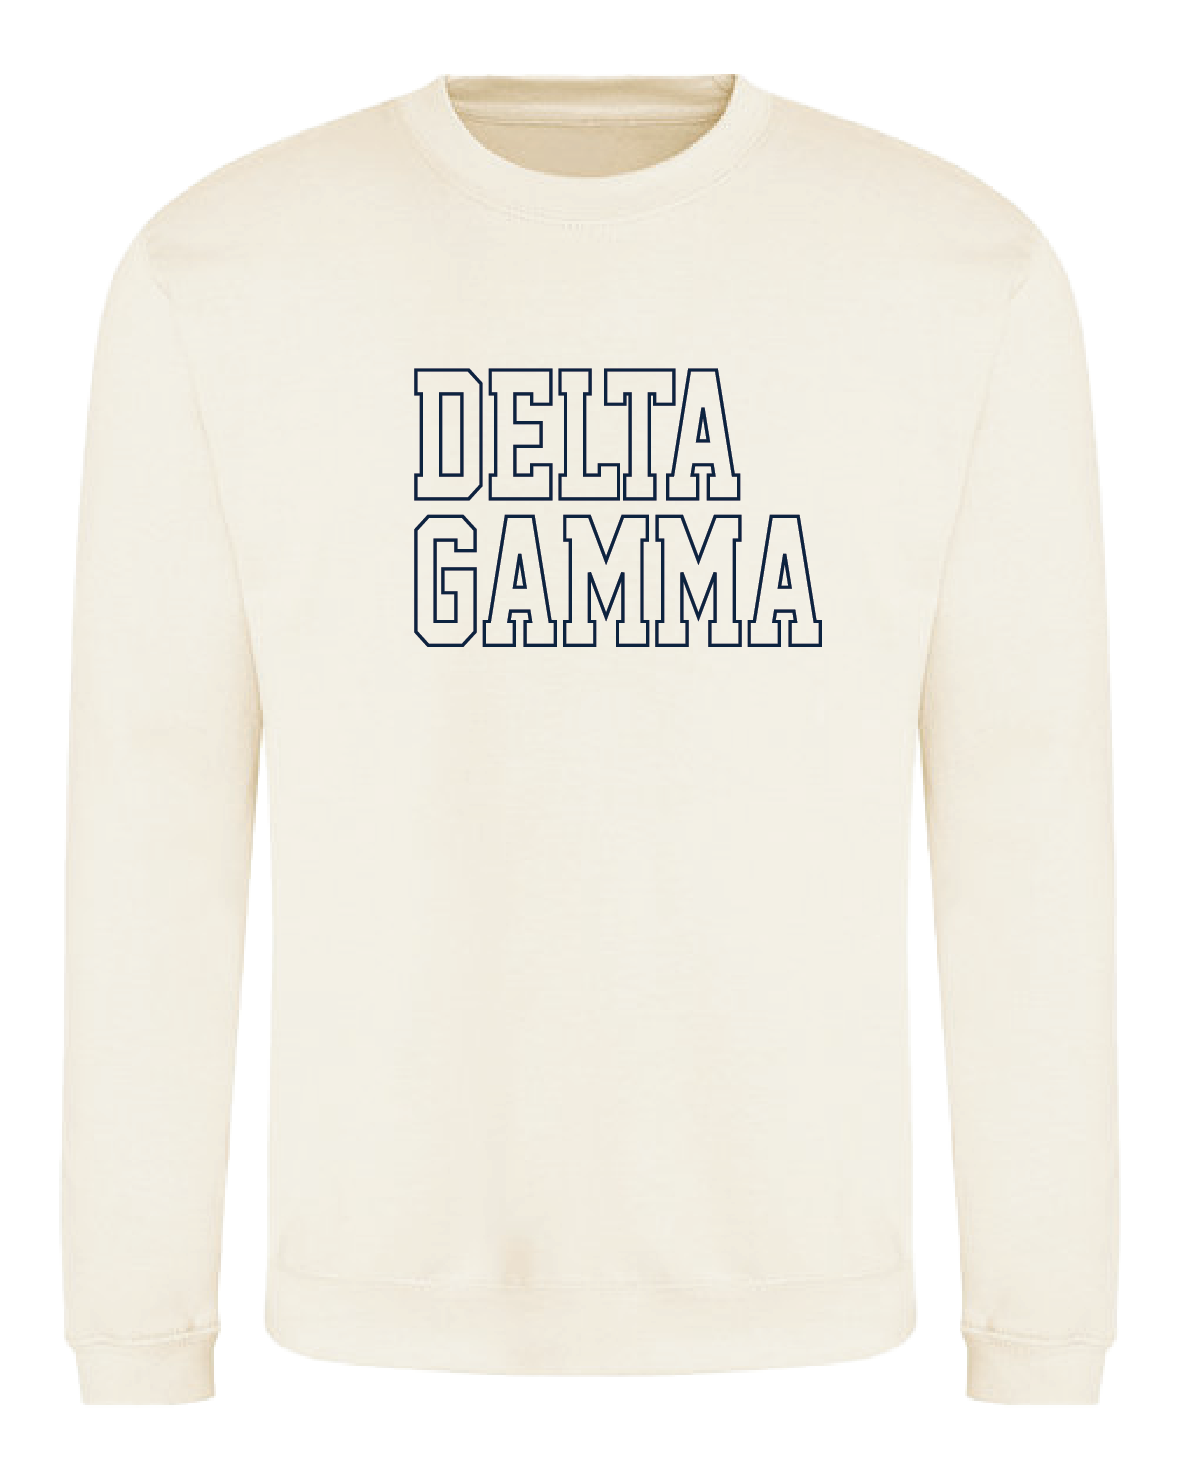 WS - Delta Gamma Block Crewneck (min qty 6) $32 / $70